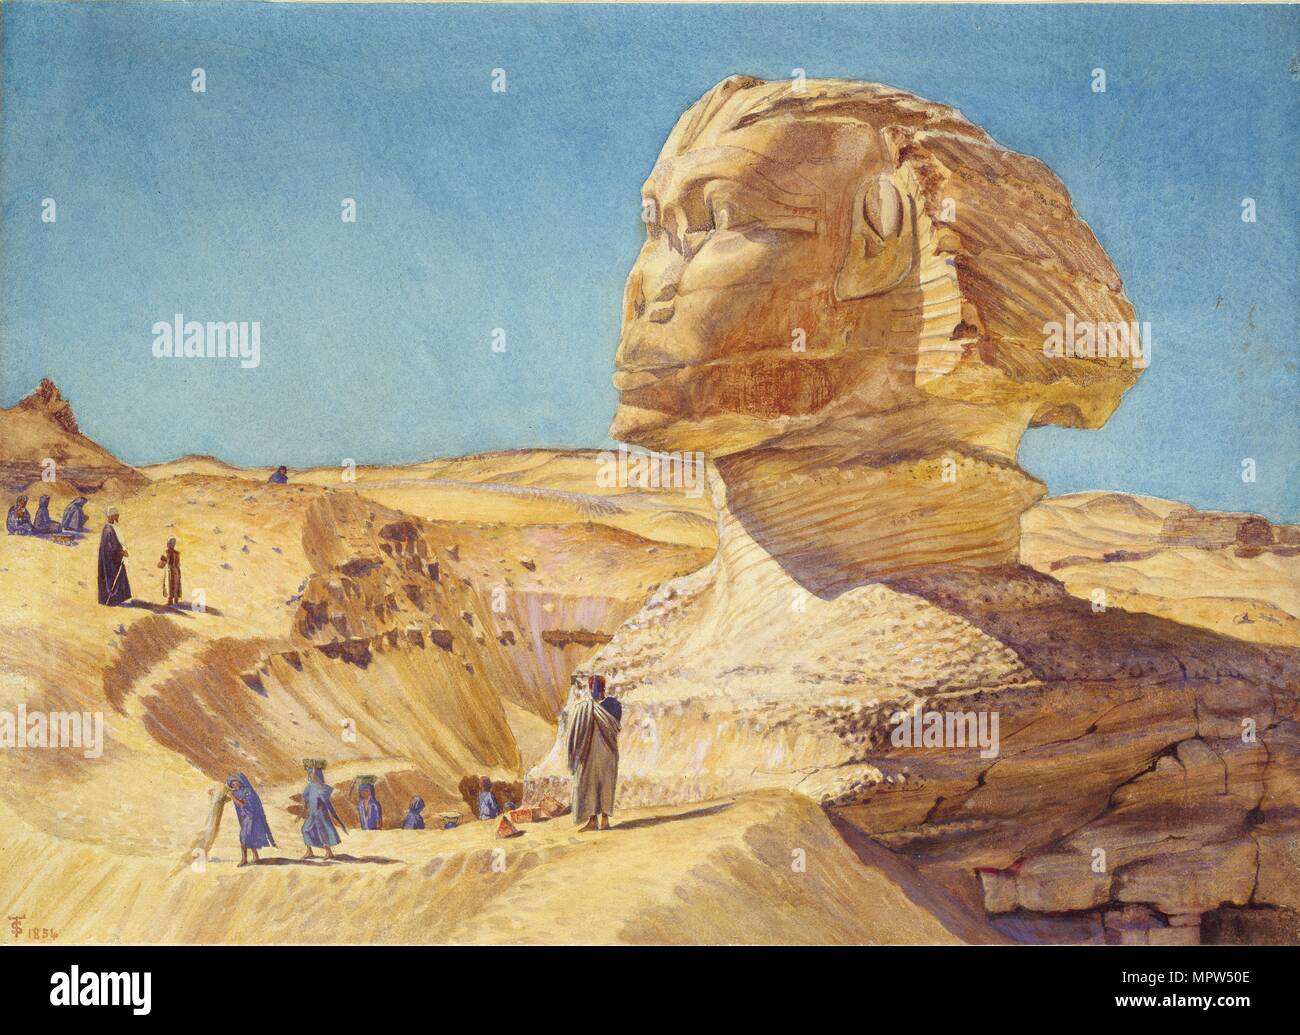 Die große Sphinx, die Pyramiden von Gizeh, 1854. Artist: Thomas Seddon. Stockfoto